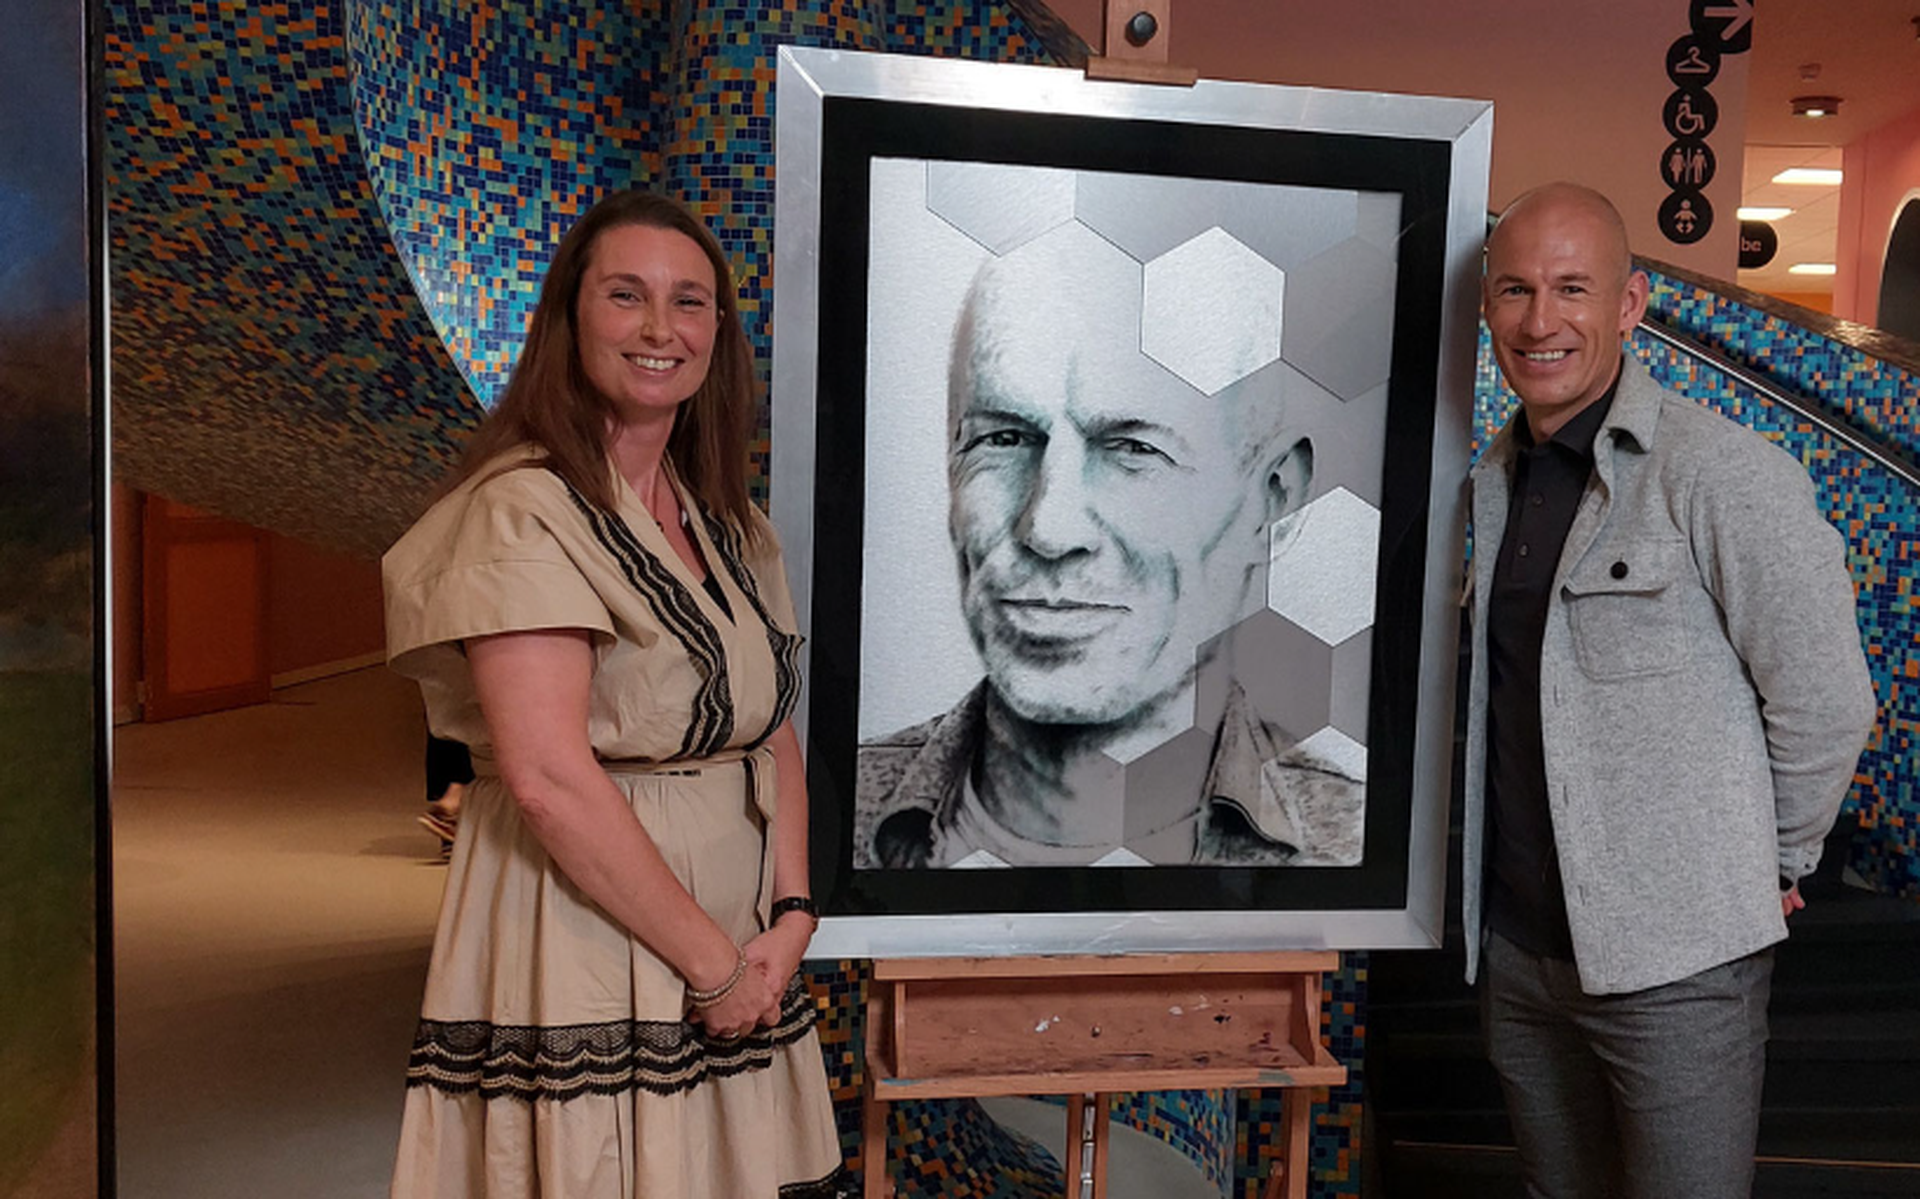 Robben koos het schilderij van Bianca van Duijn.